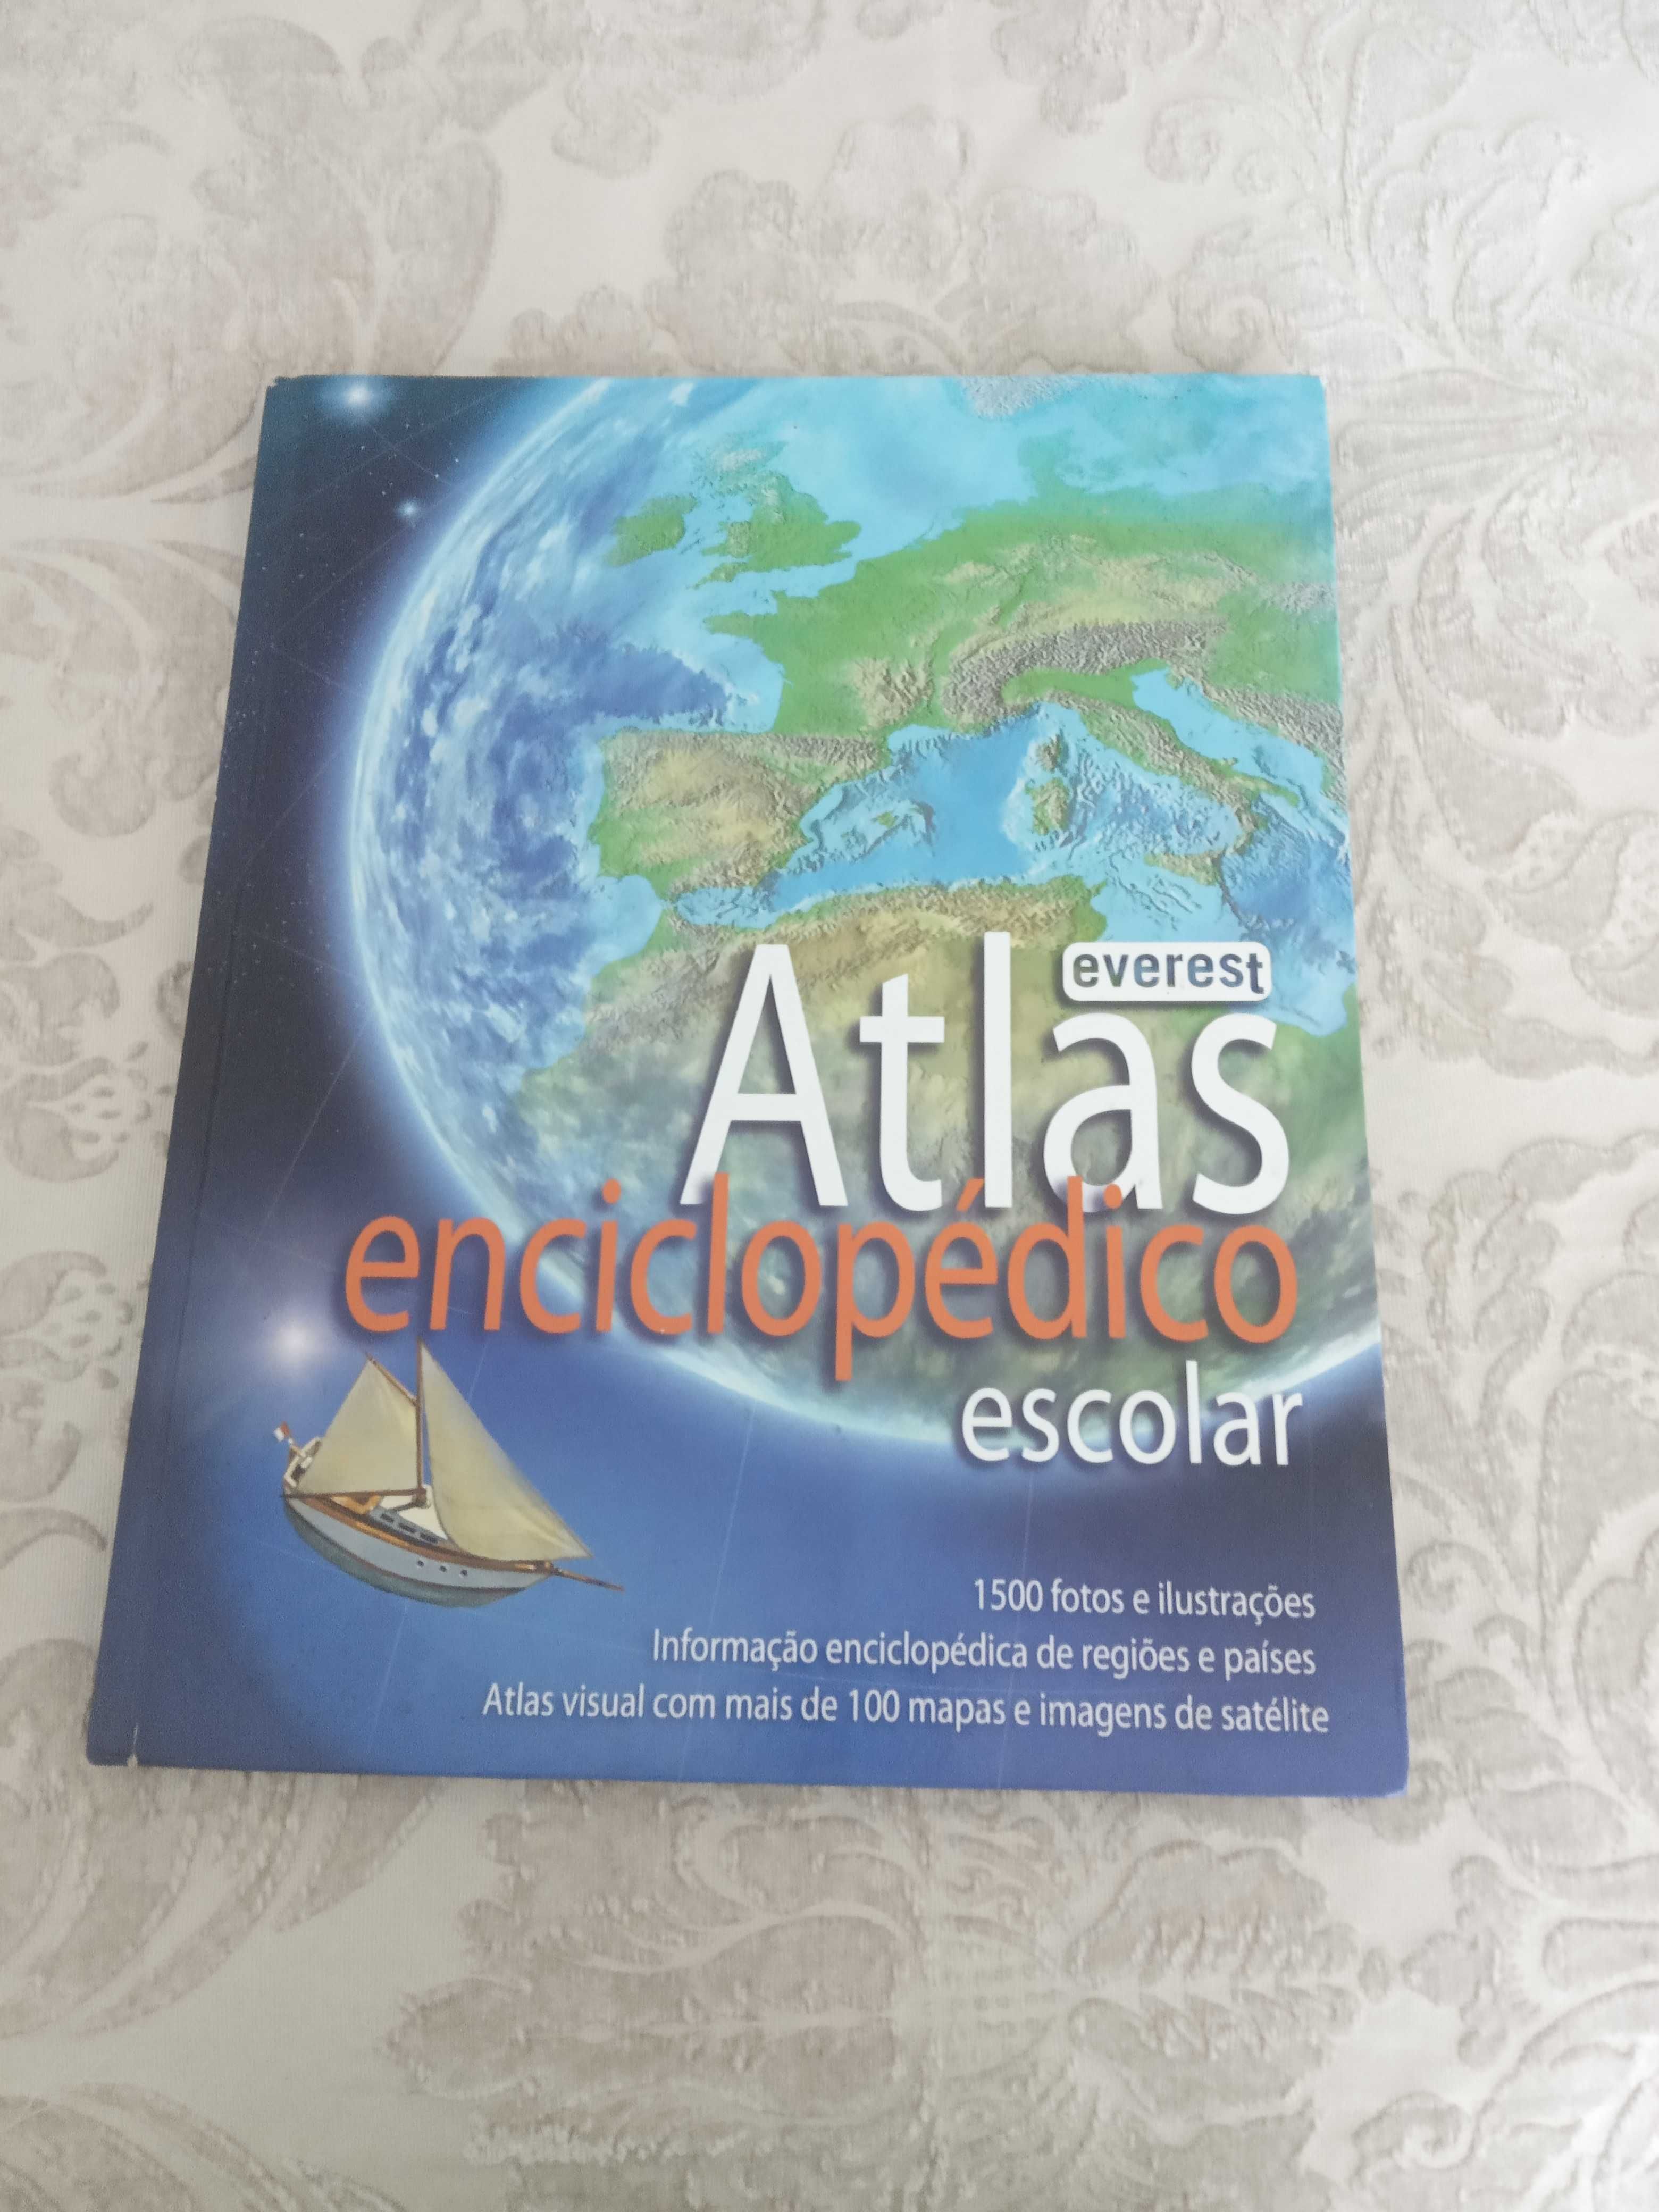 Atlas enciclopédico escolar